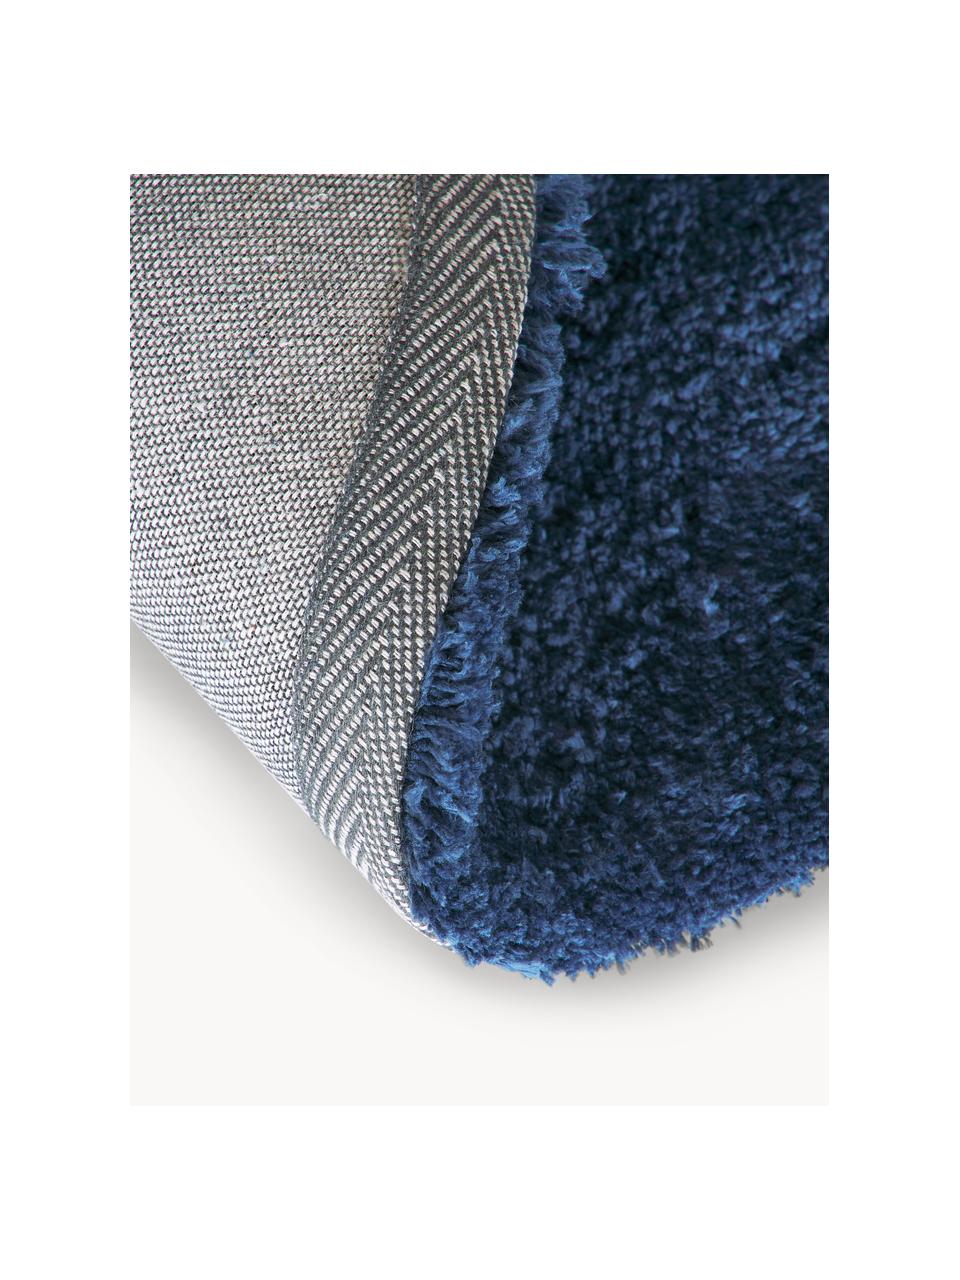 Okrągły puszysty dywan z długim włosiem Leighton, Ciemny niebieski, Ø 120 cm (Rozmiar S)